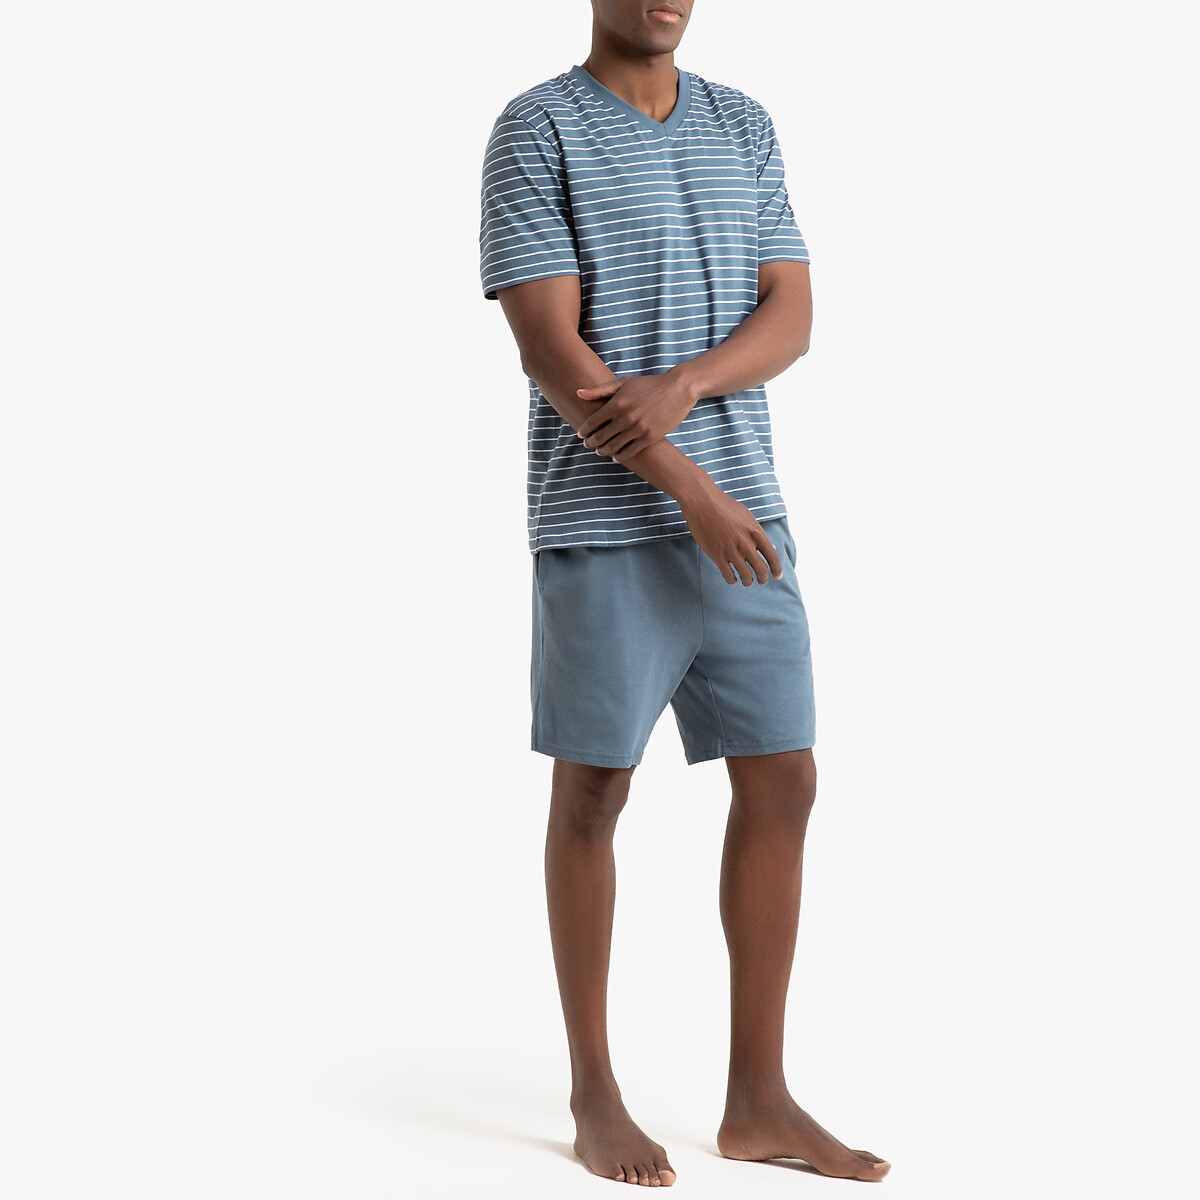 Пижама LaRedoute Из хлопка джерси S синий, размер S - фото 2